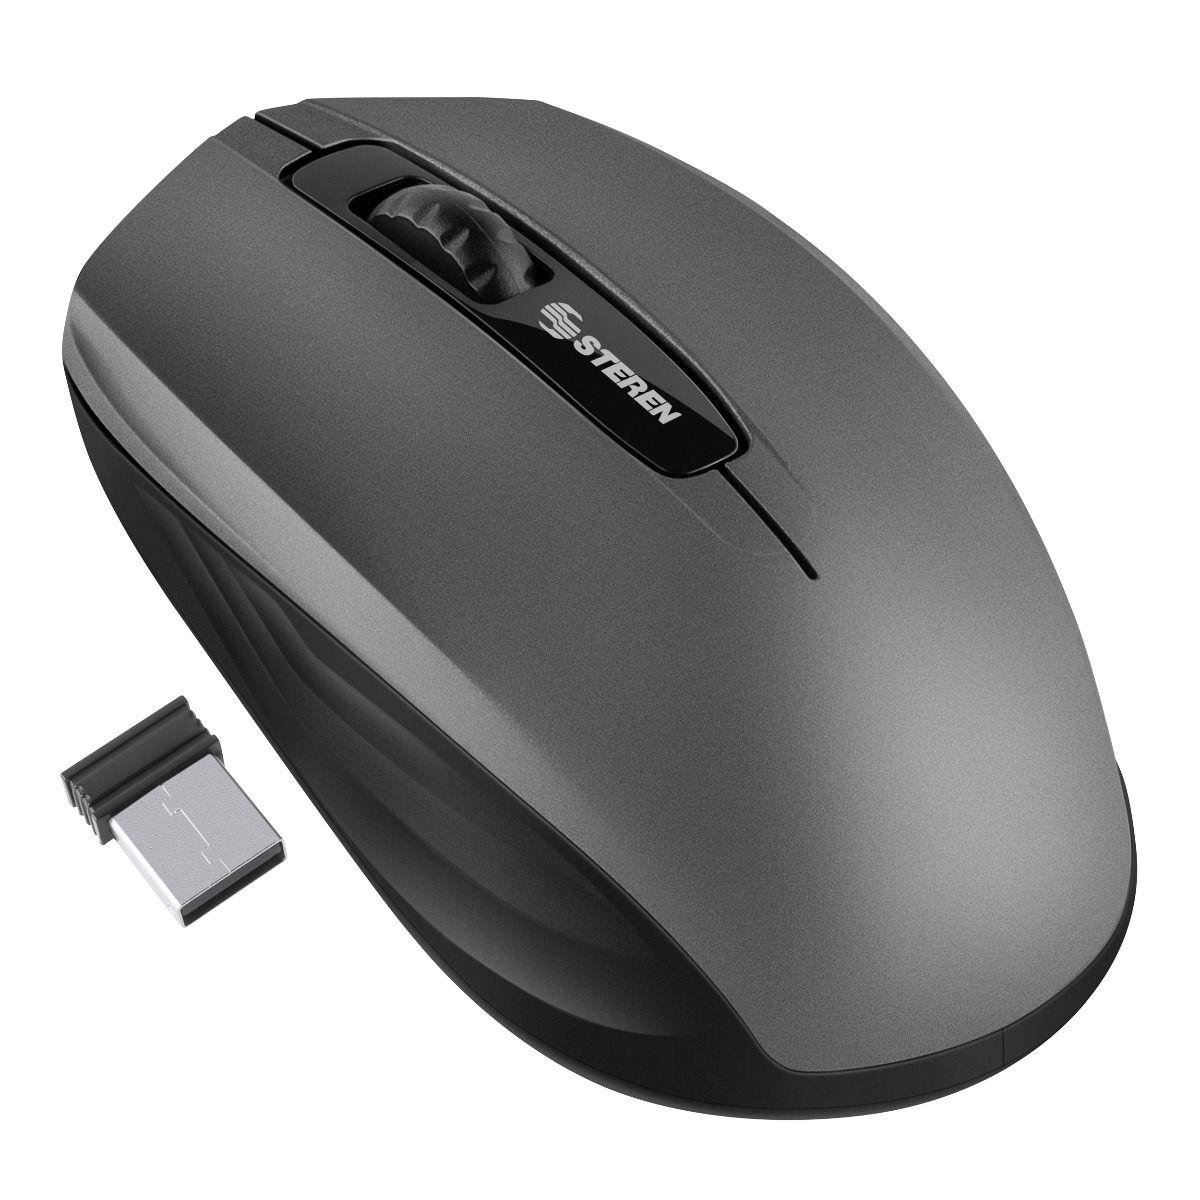 SGIN Ratón con cable USB, ratón óptico para computadora con diseño  ergonómico, portátil, mouse para portátil compatible con PC con Windows,  laptop